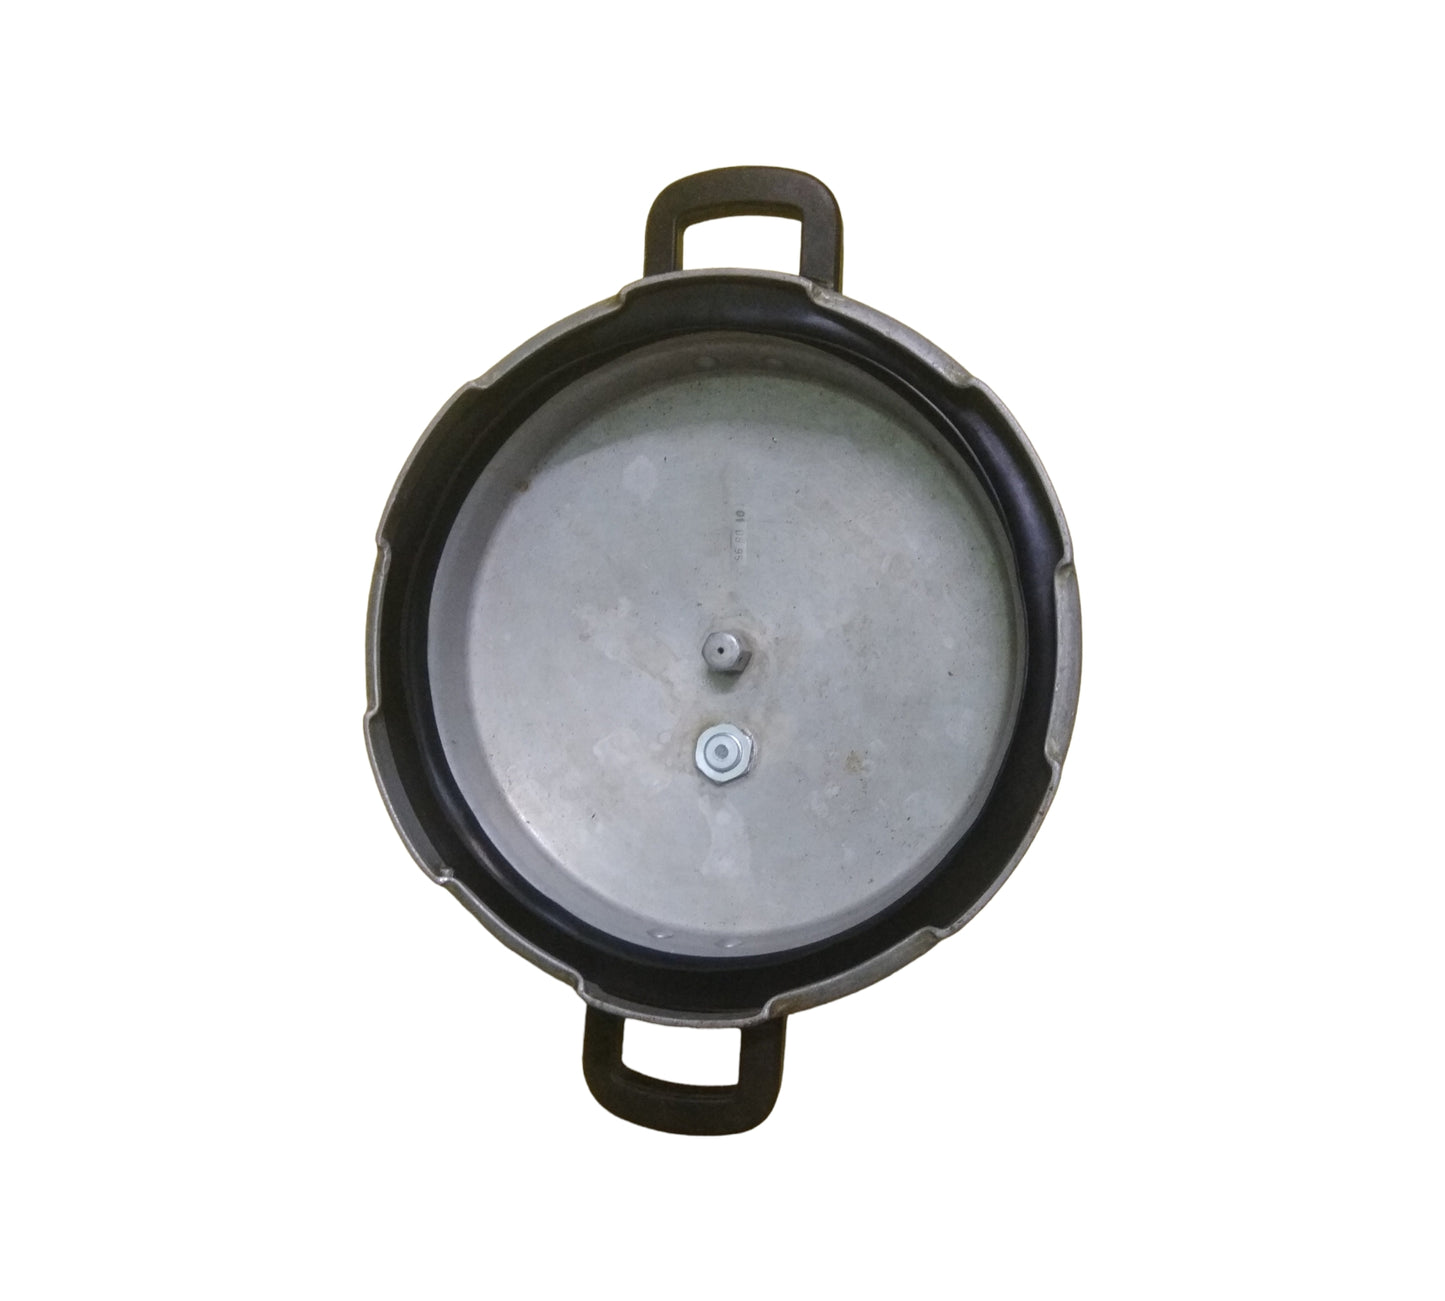 Cooker gasket suitable for Popular 5 Litre Pressure Cooker